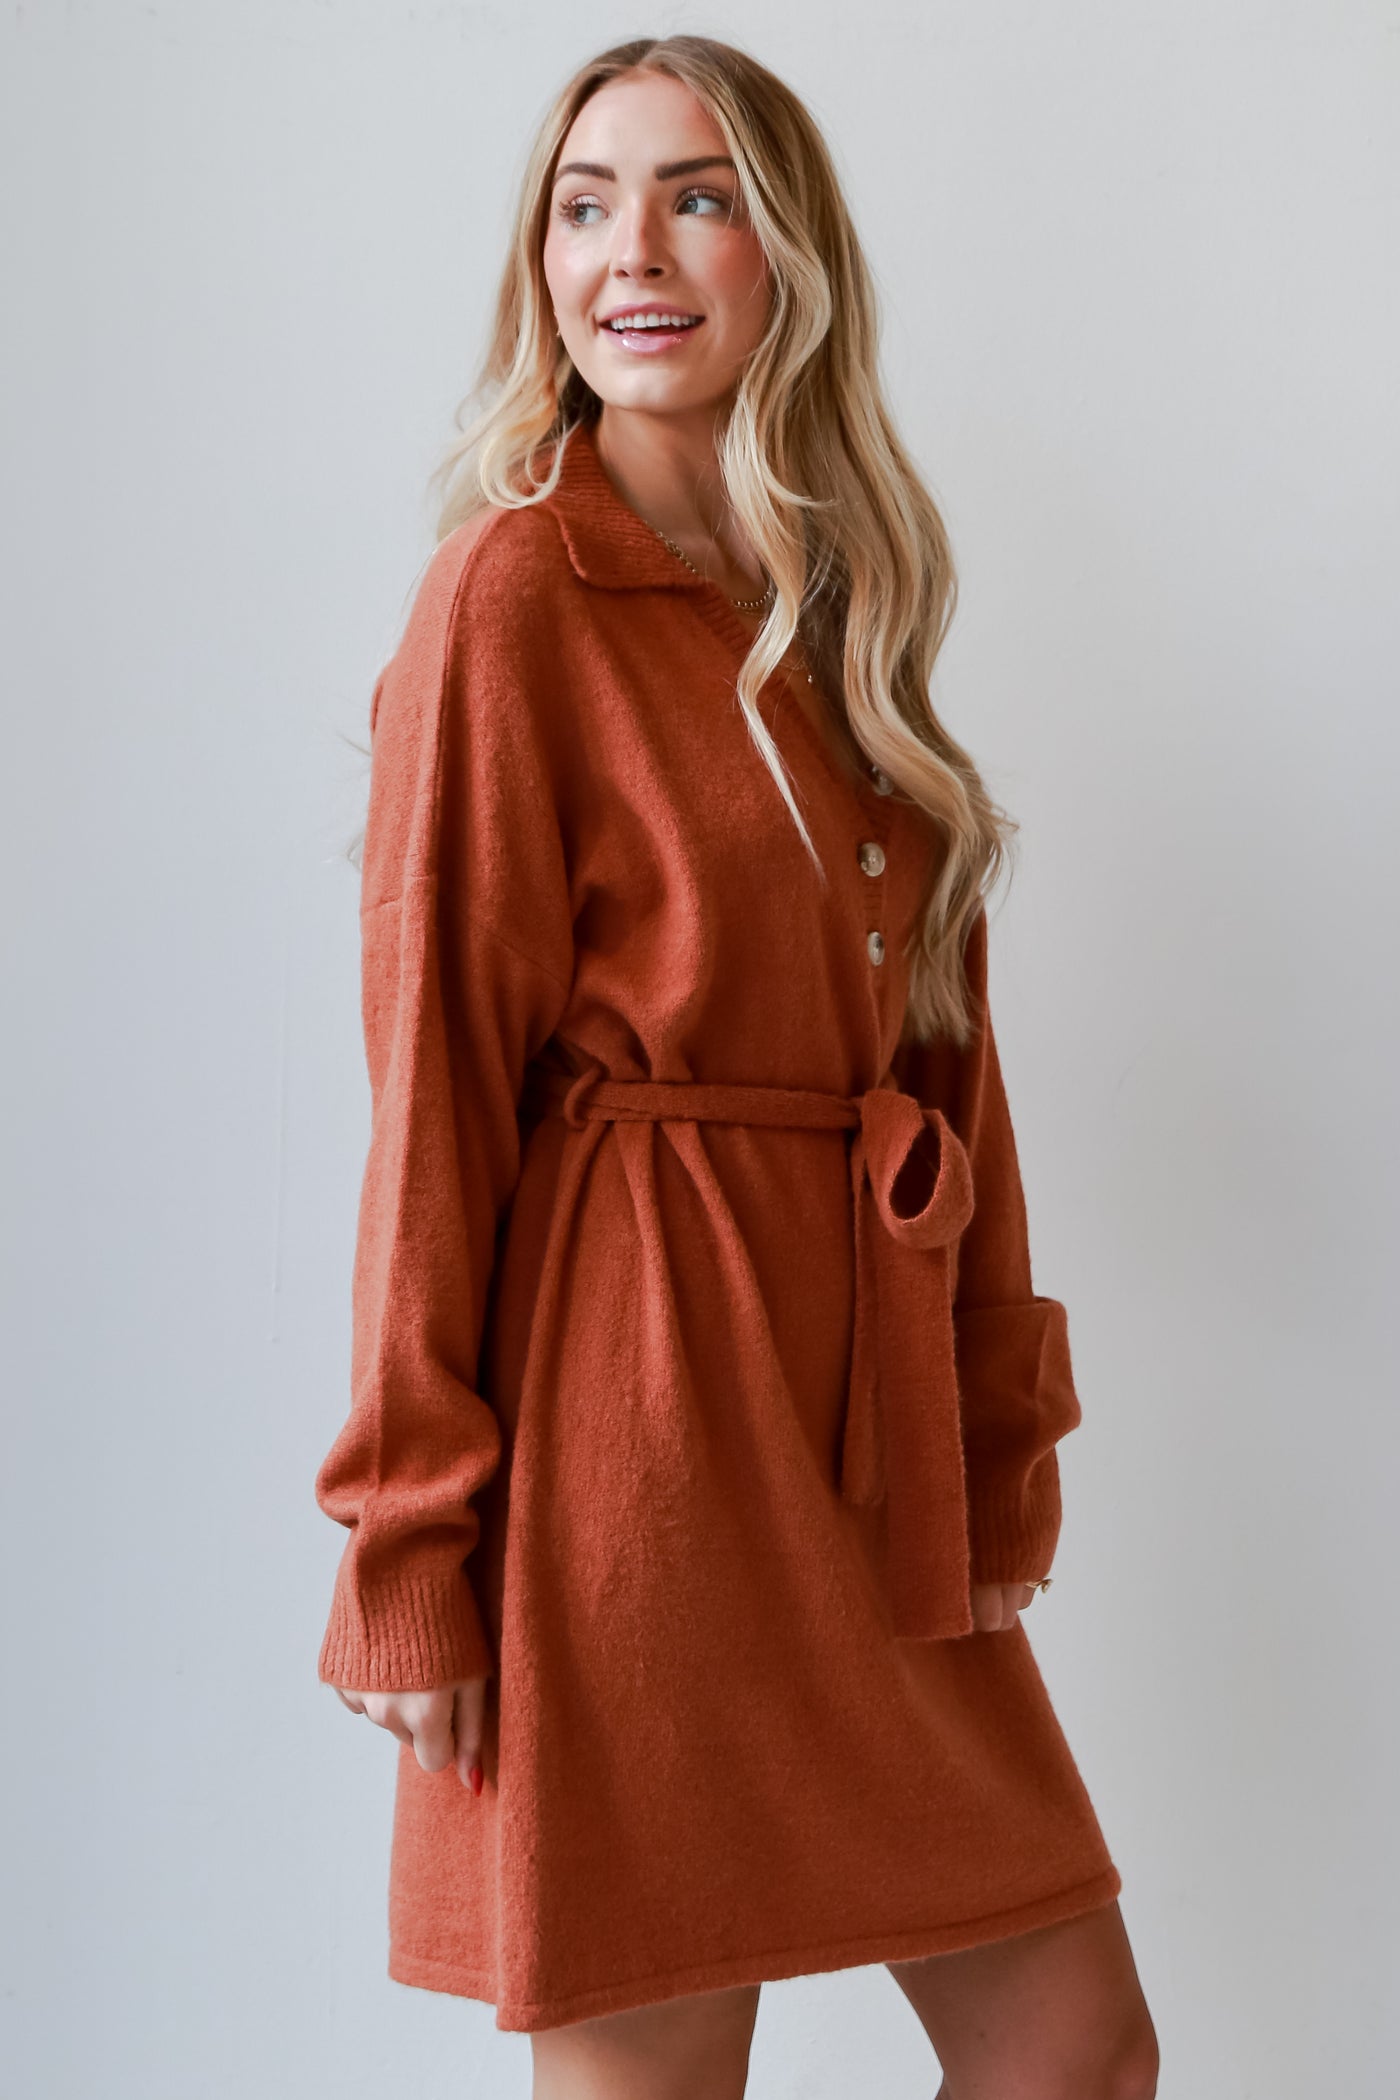 rust dress for womenblue Sweater Dress.  Cheap Dresses. Online cheap dresses. Online Women's Boutique